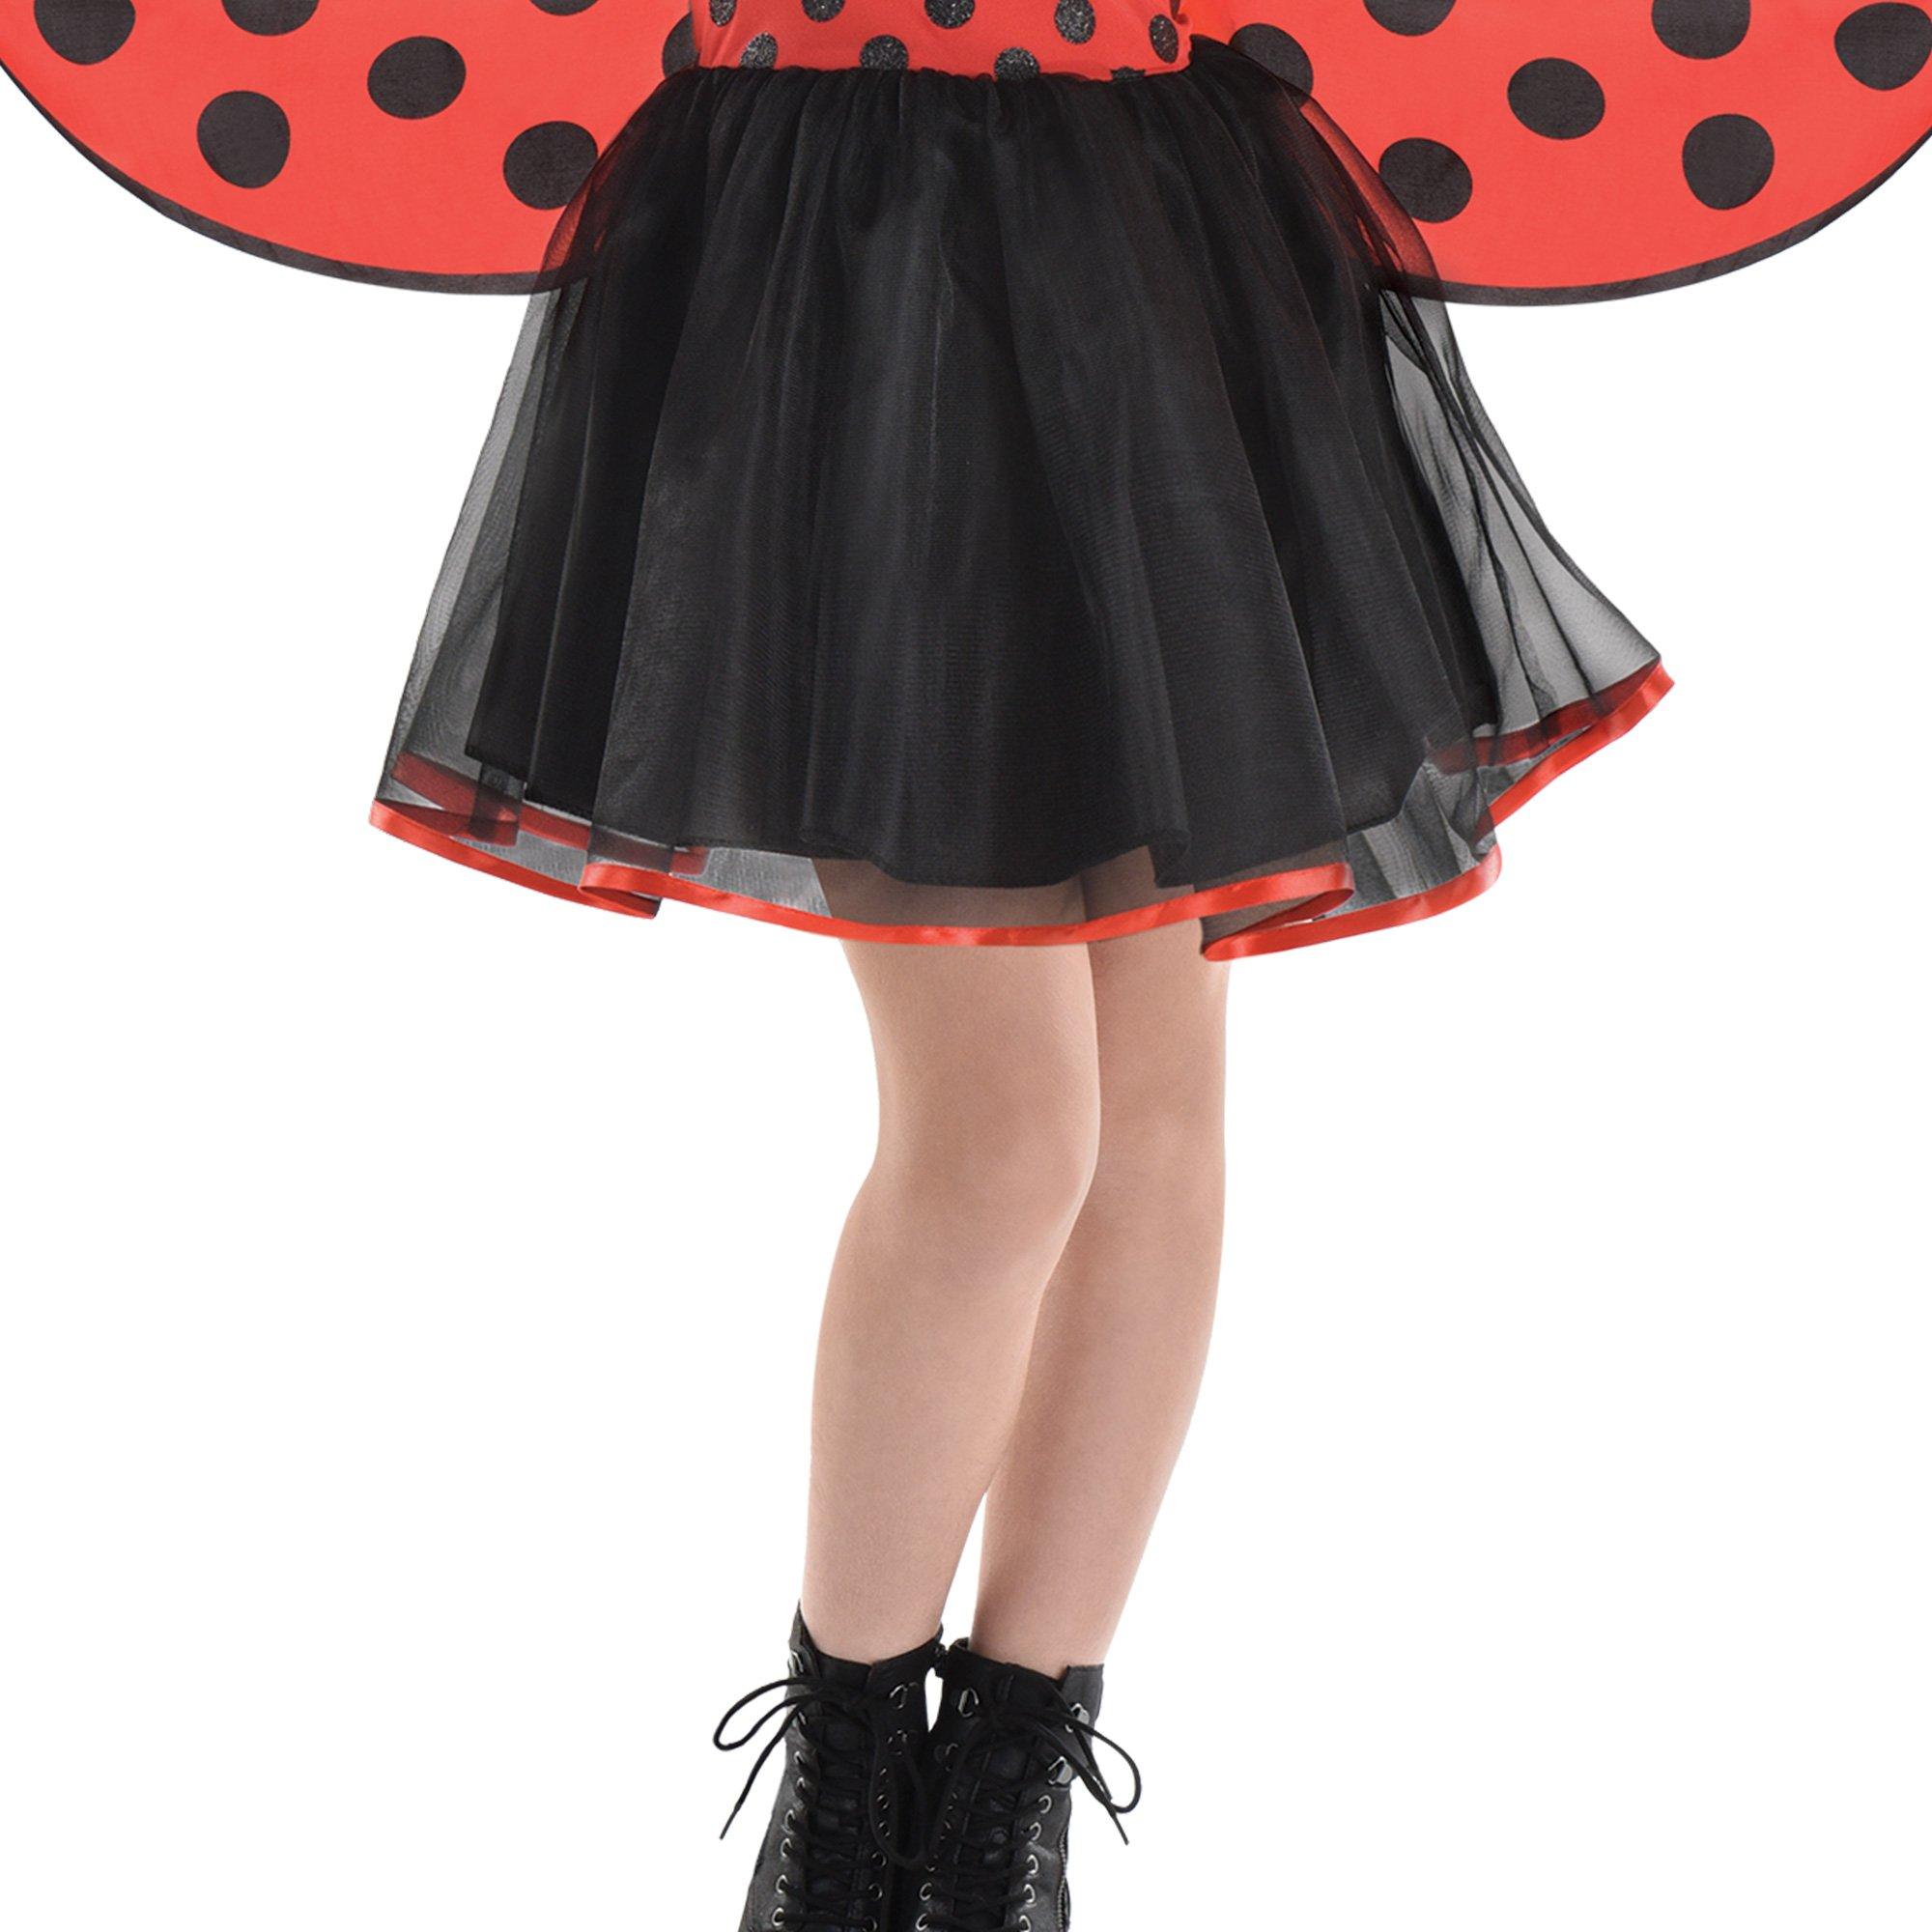 Kids' Ladybug Dress Costume